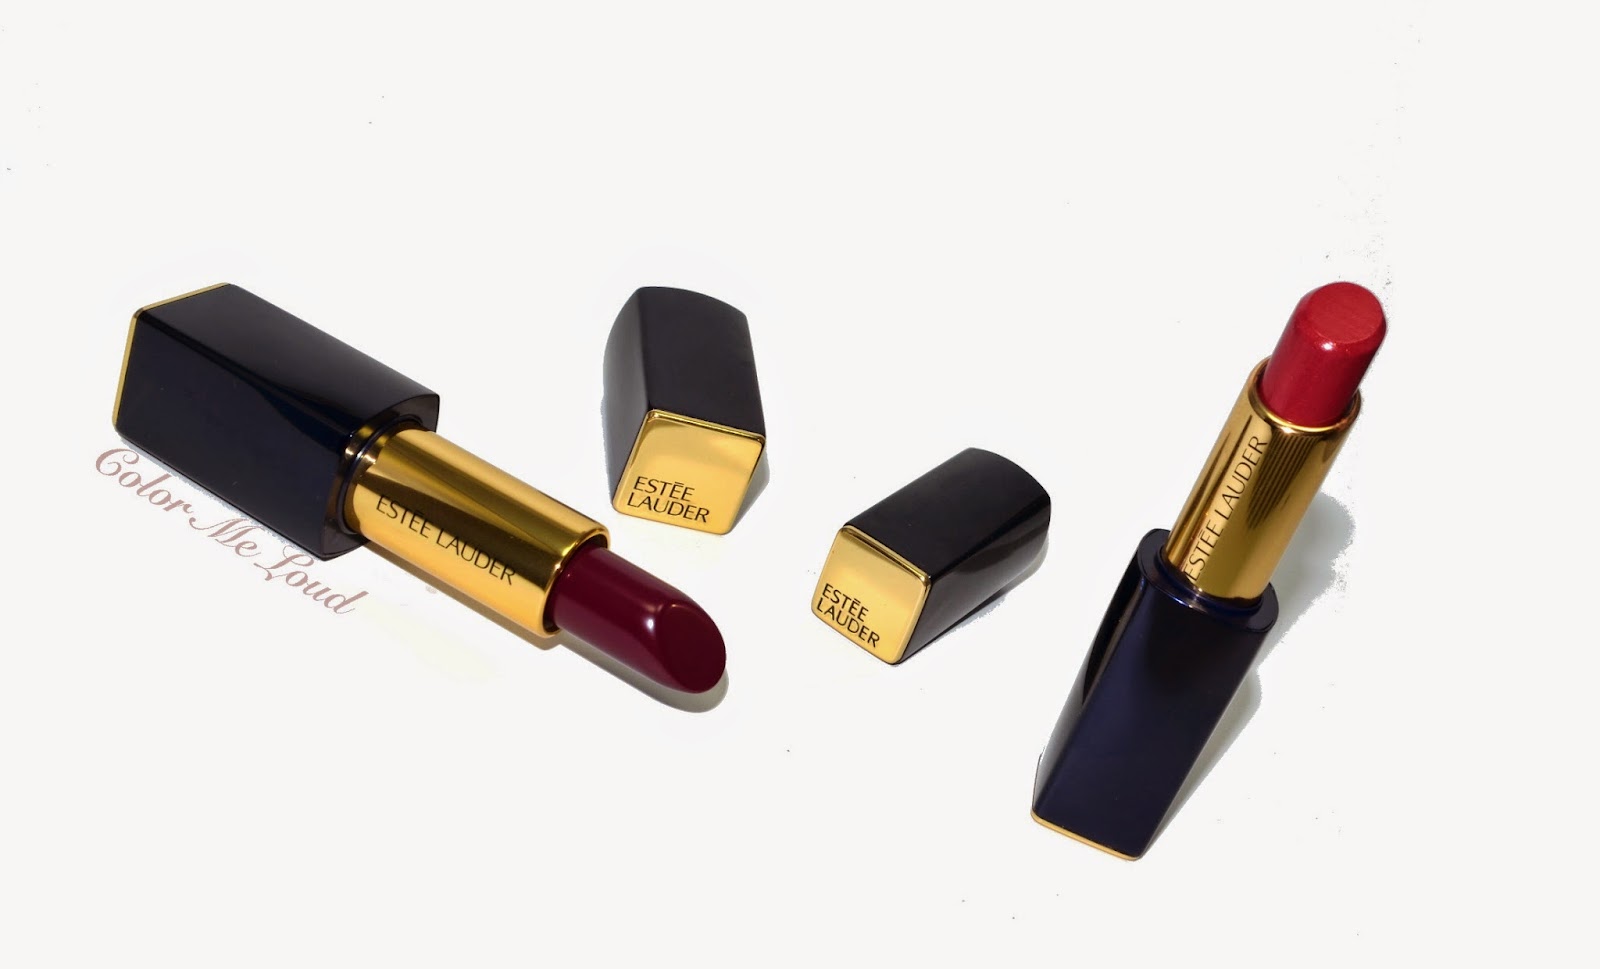 Estée Lauder Lipsticks Envy Shine in Inspiring, Pure Color Envy in Insolent Plum, Review, Swatch, Comparison & FOTD